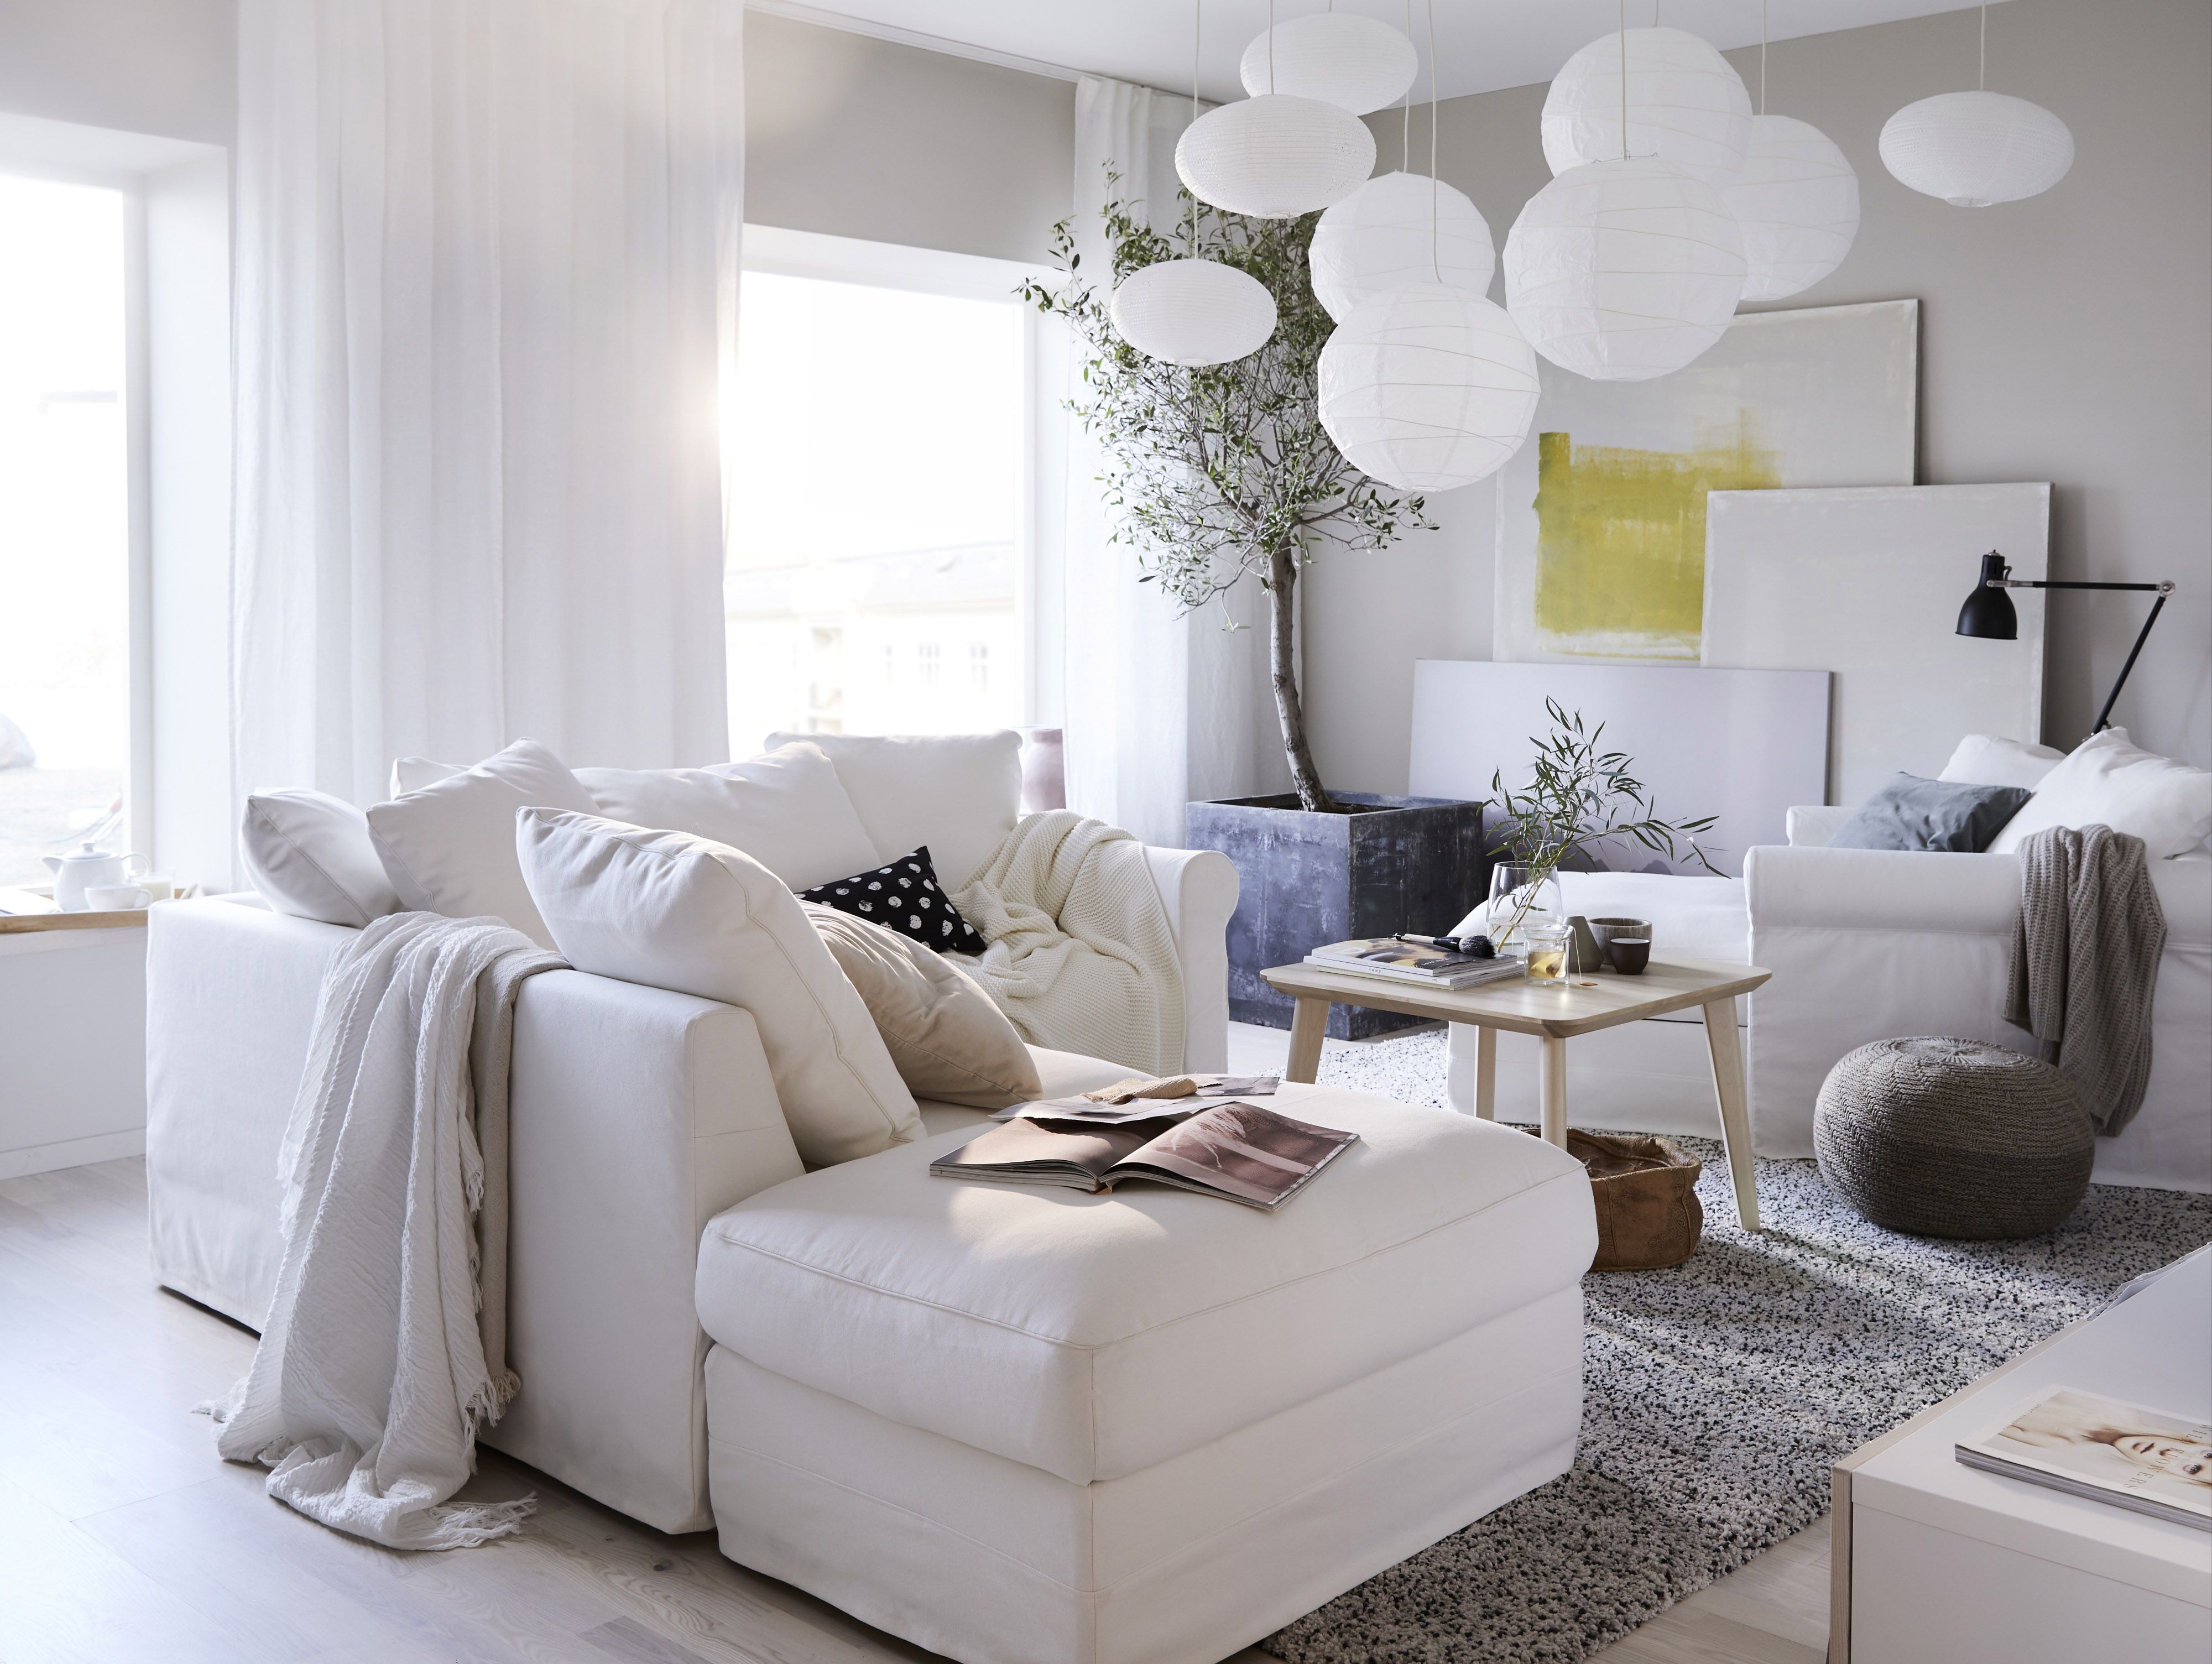 Muebles de IKEA para decorar en blanco - Decorar con color